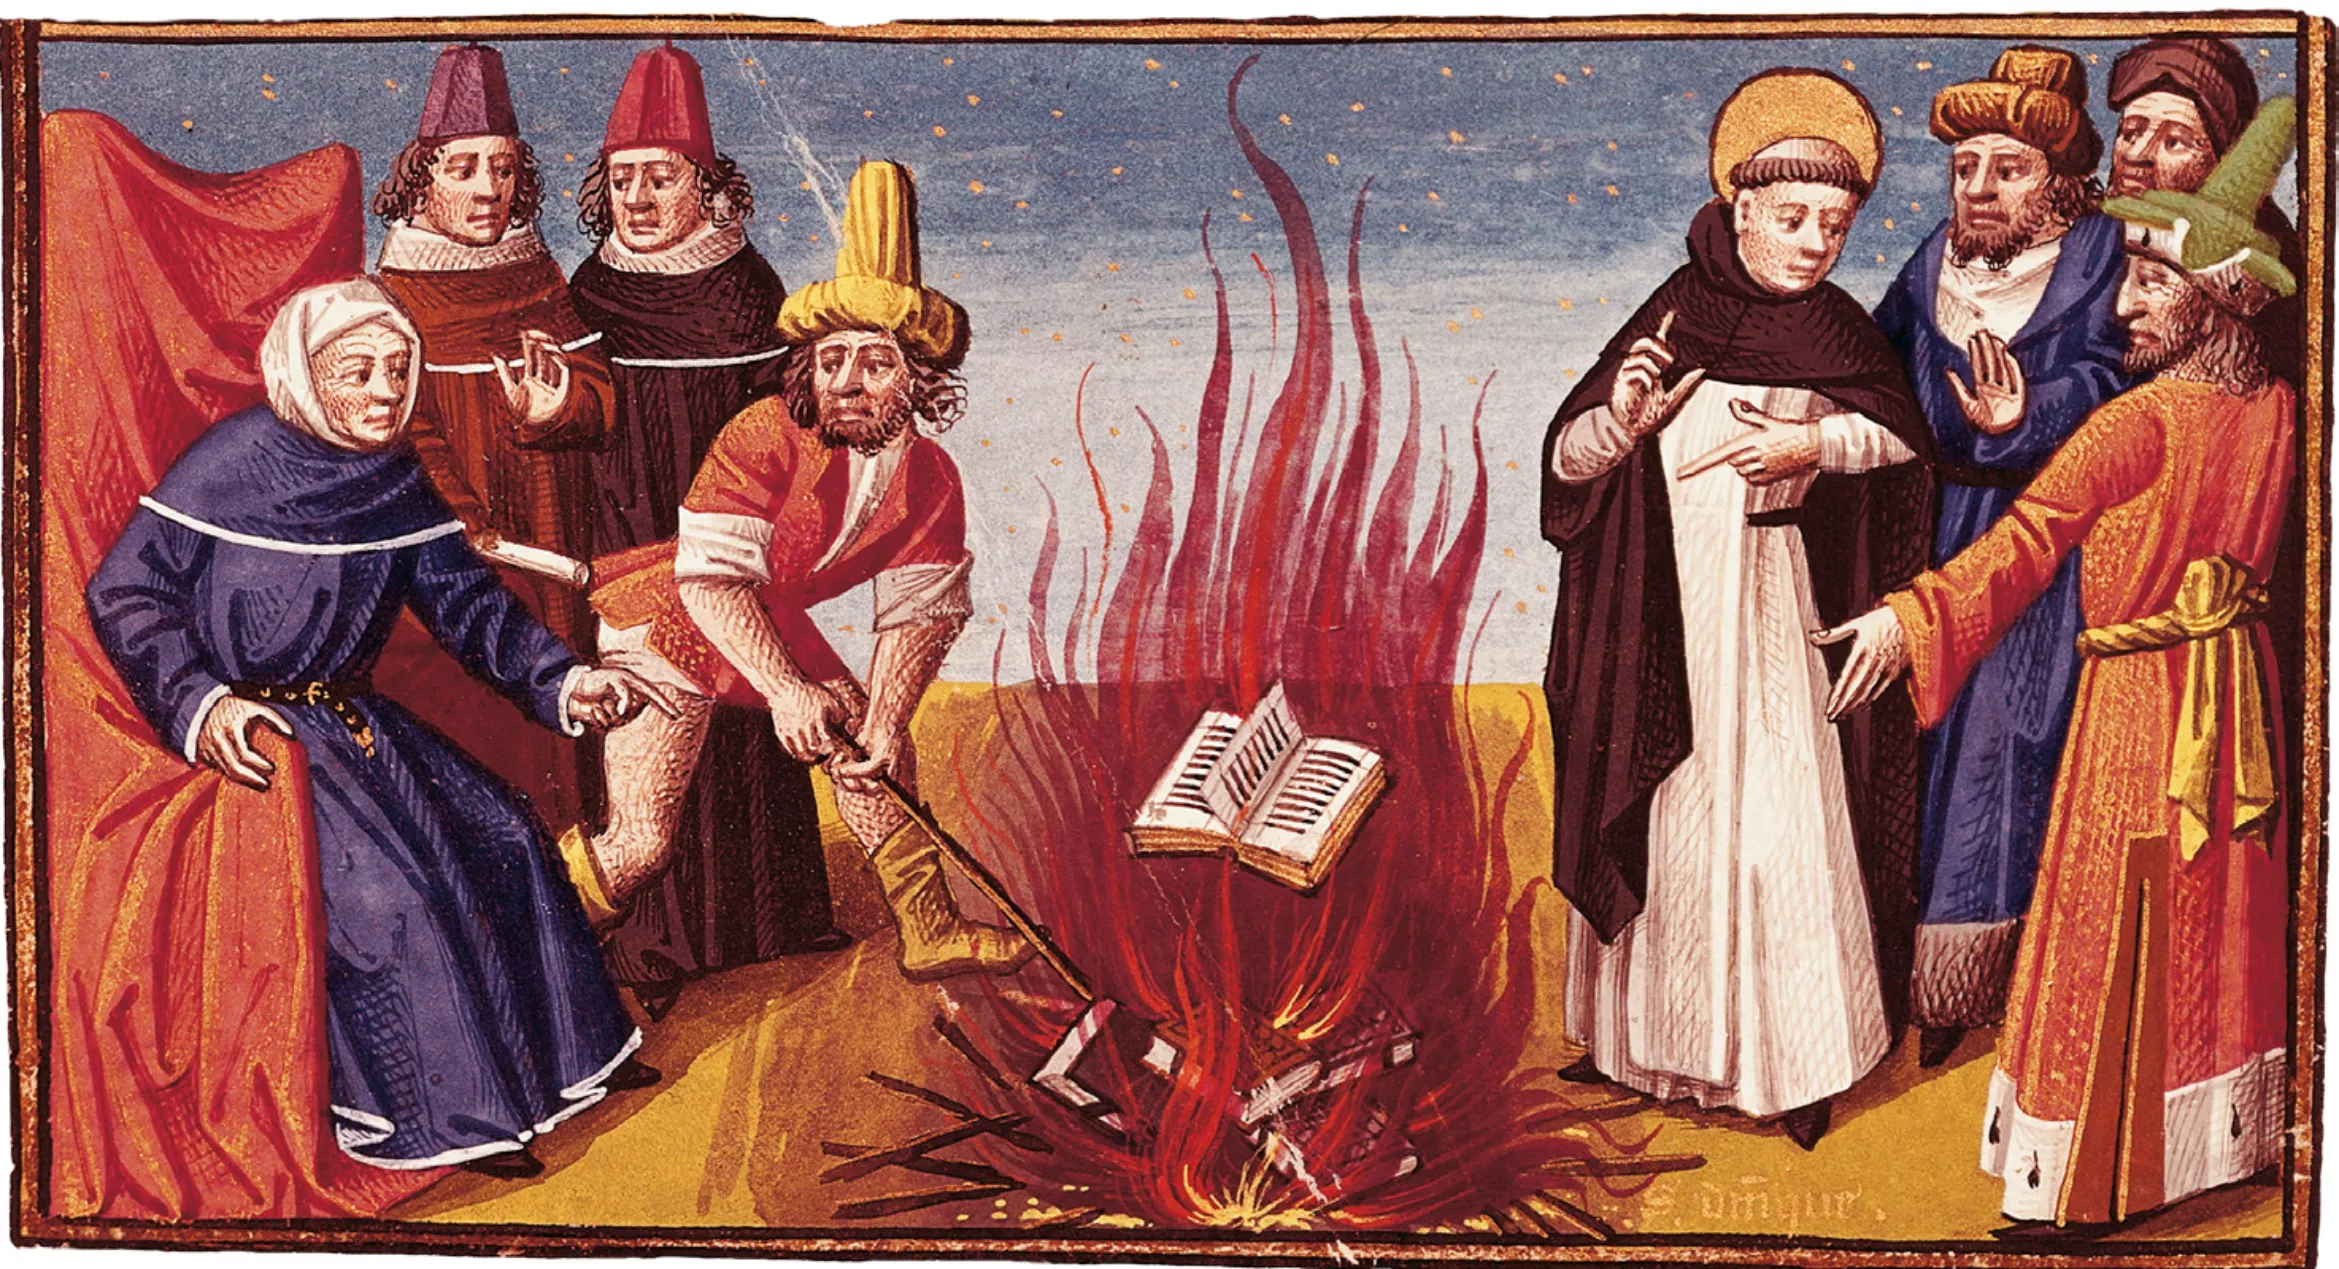 Miniatura del segle XV en la qual sant Domènec crema llibres càtars. Els càtars criticaven la hipocresia i cobdícia de l’Església, que els va perseguir fins a exterminar-los